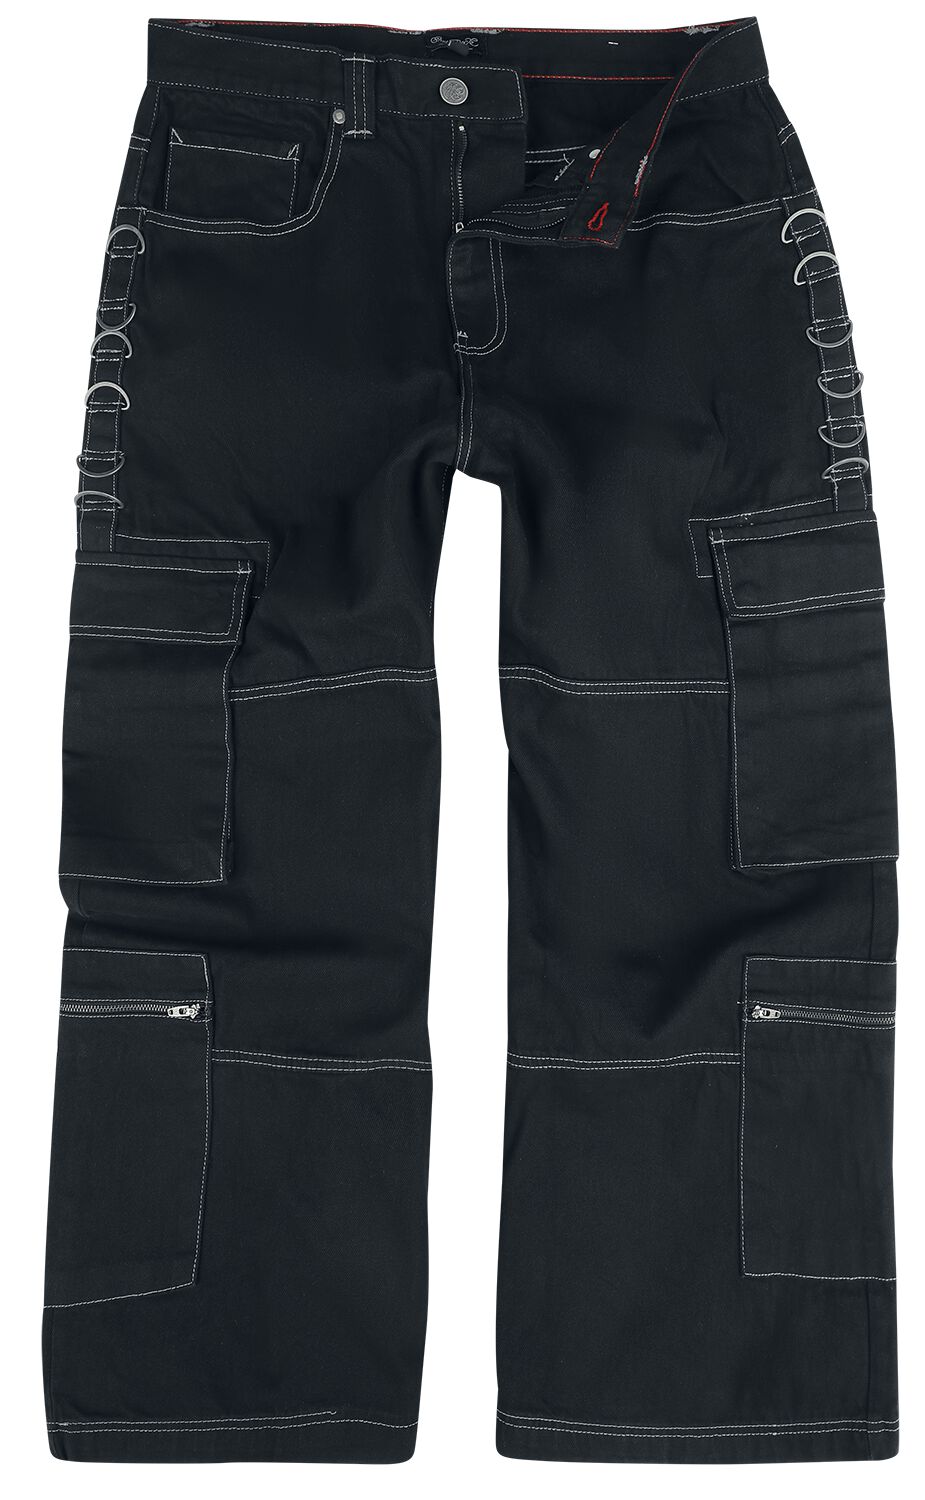 Chet Rock Jeans - Monaghan Utility Jeans - W30L32 bis W38L34 - für Männer - Größe W30L34 - schwarz von Chet Rock